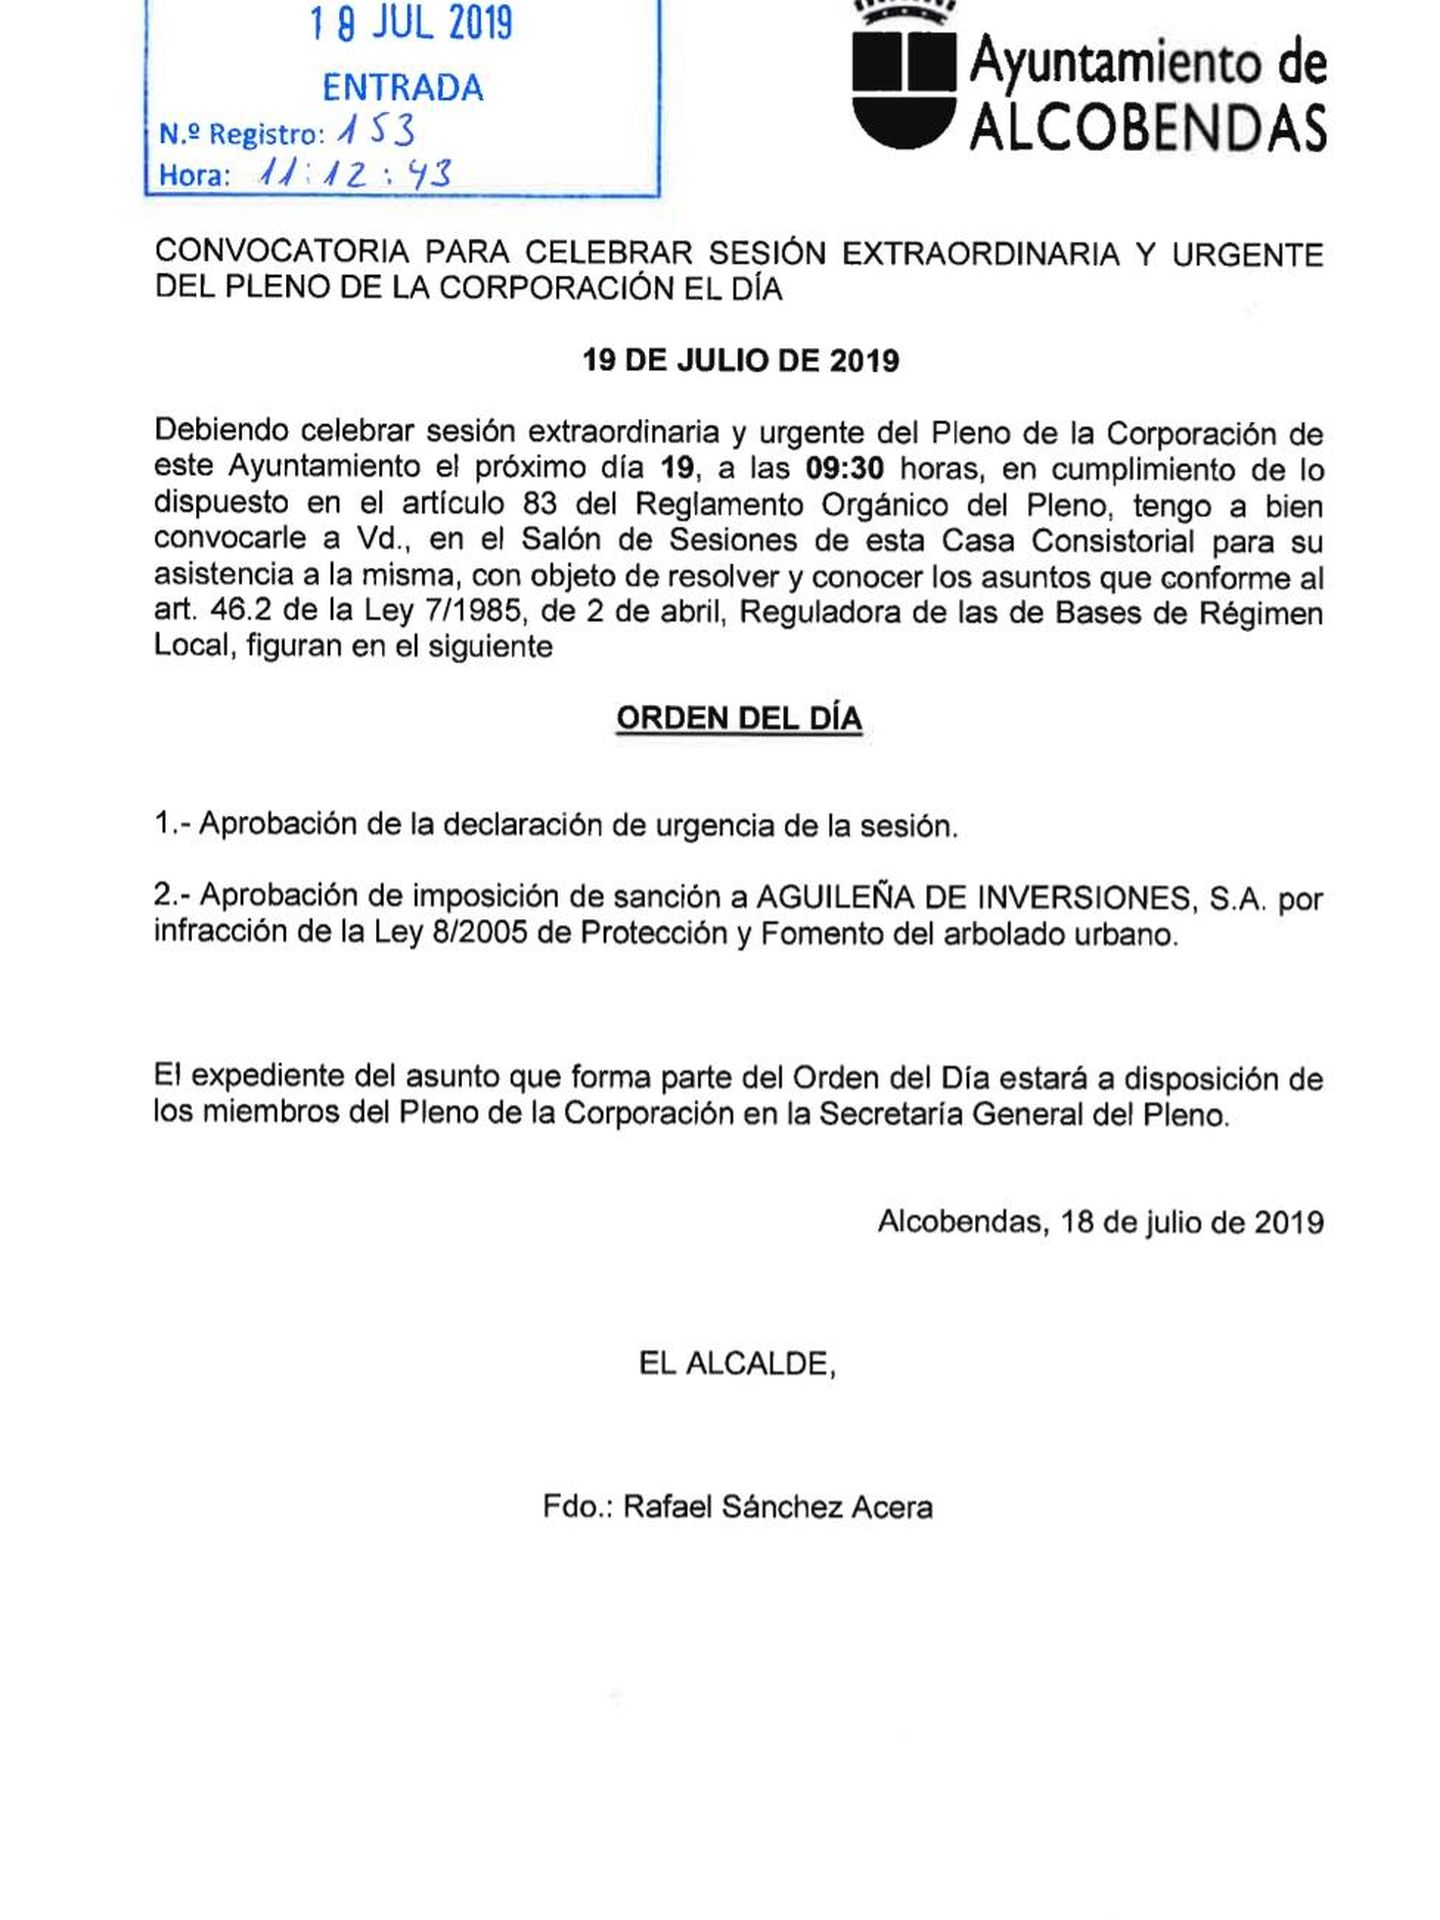 Documento del Ayuntamiento de Alcobendas en el que se cita el pleno. (Vanitatis)